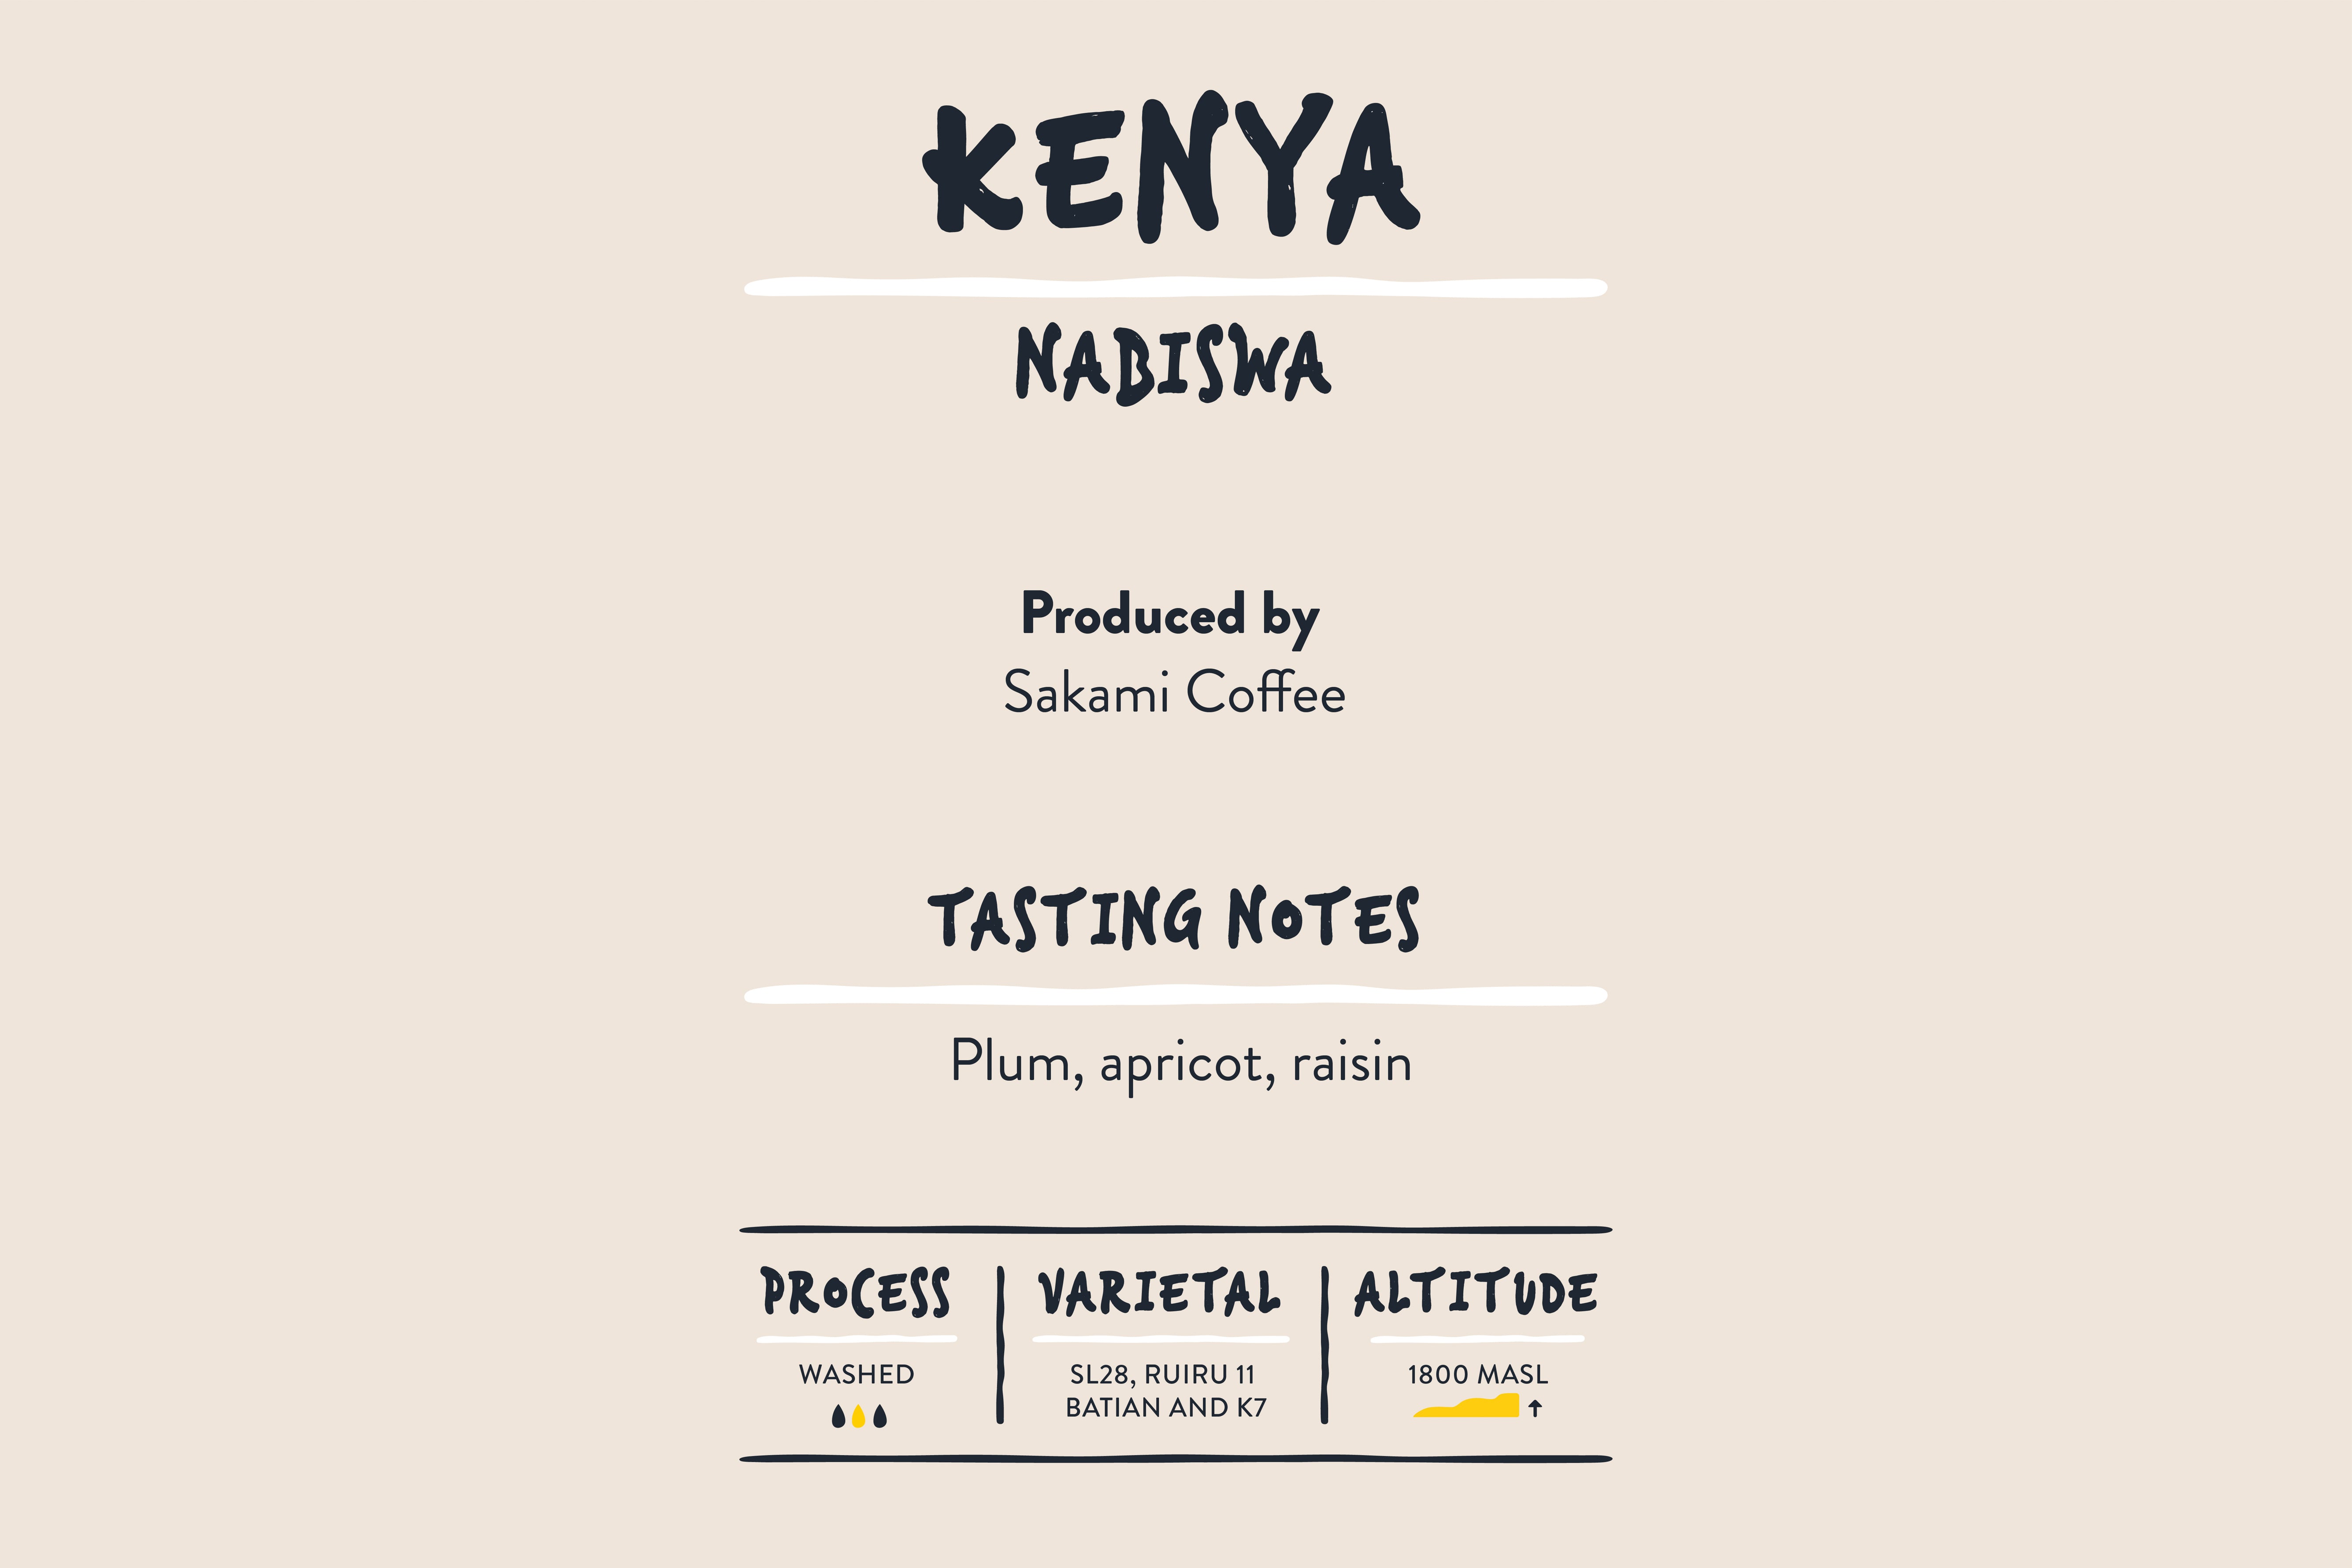 Kenyan Coffee - Kenya Nabiswa